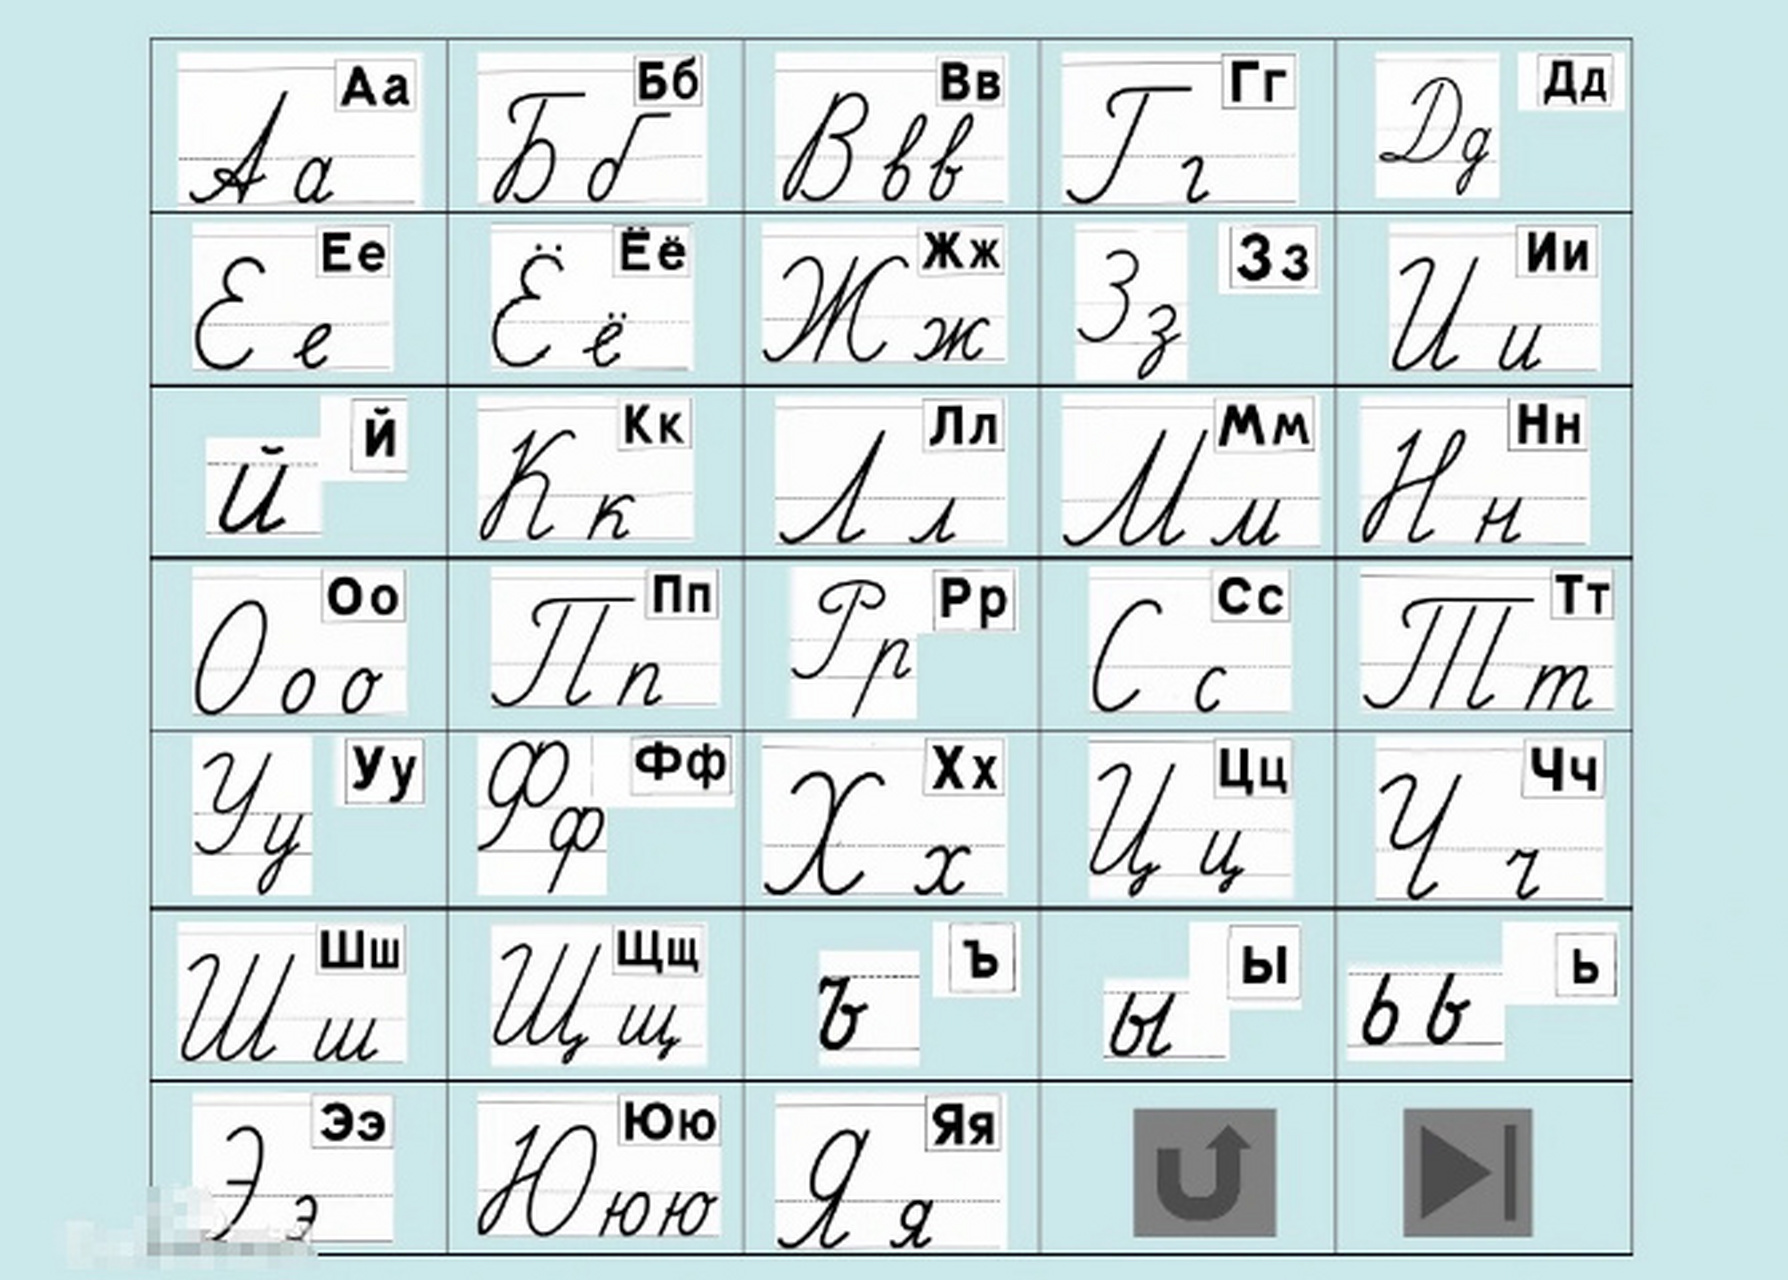 俄文字母表怎么读图片